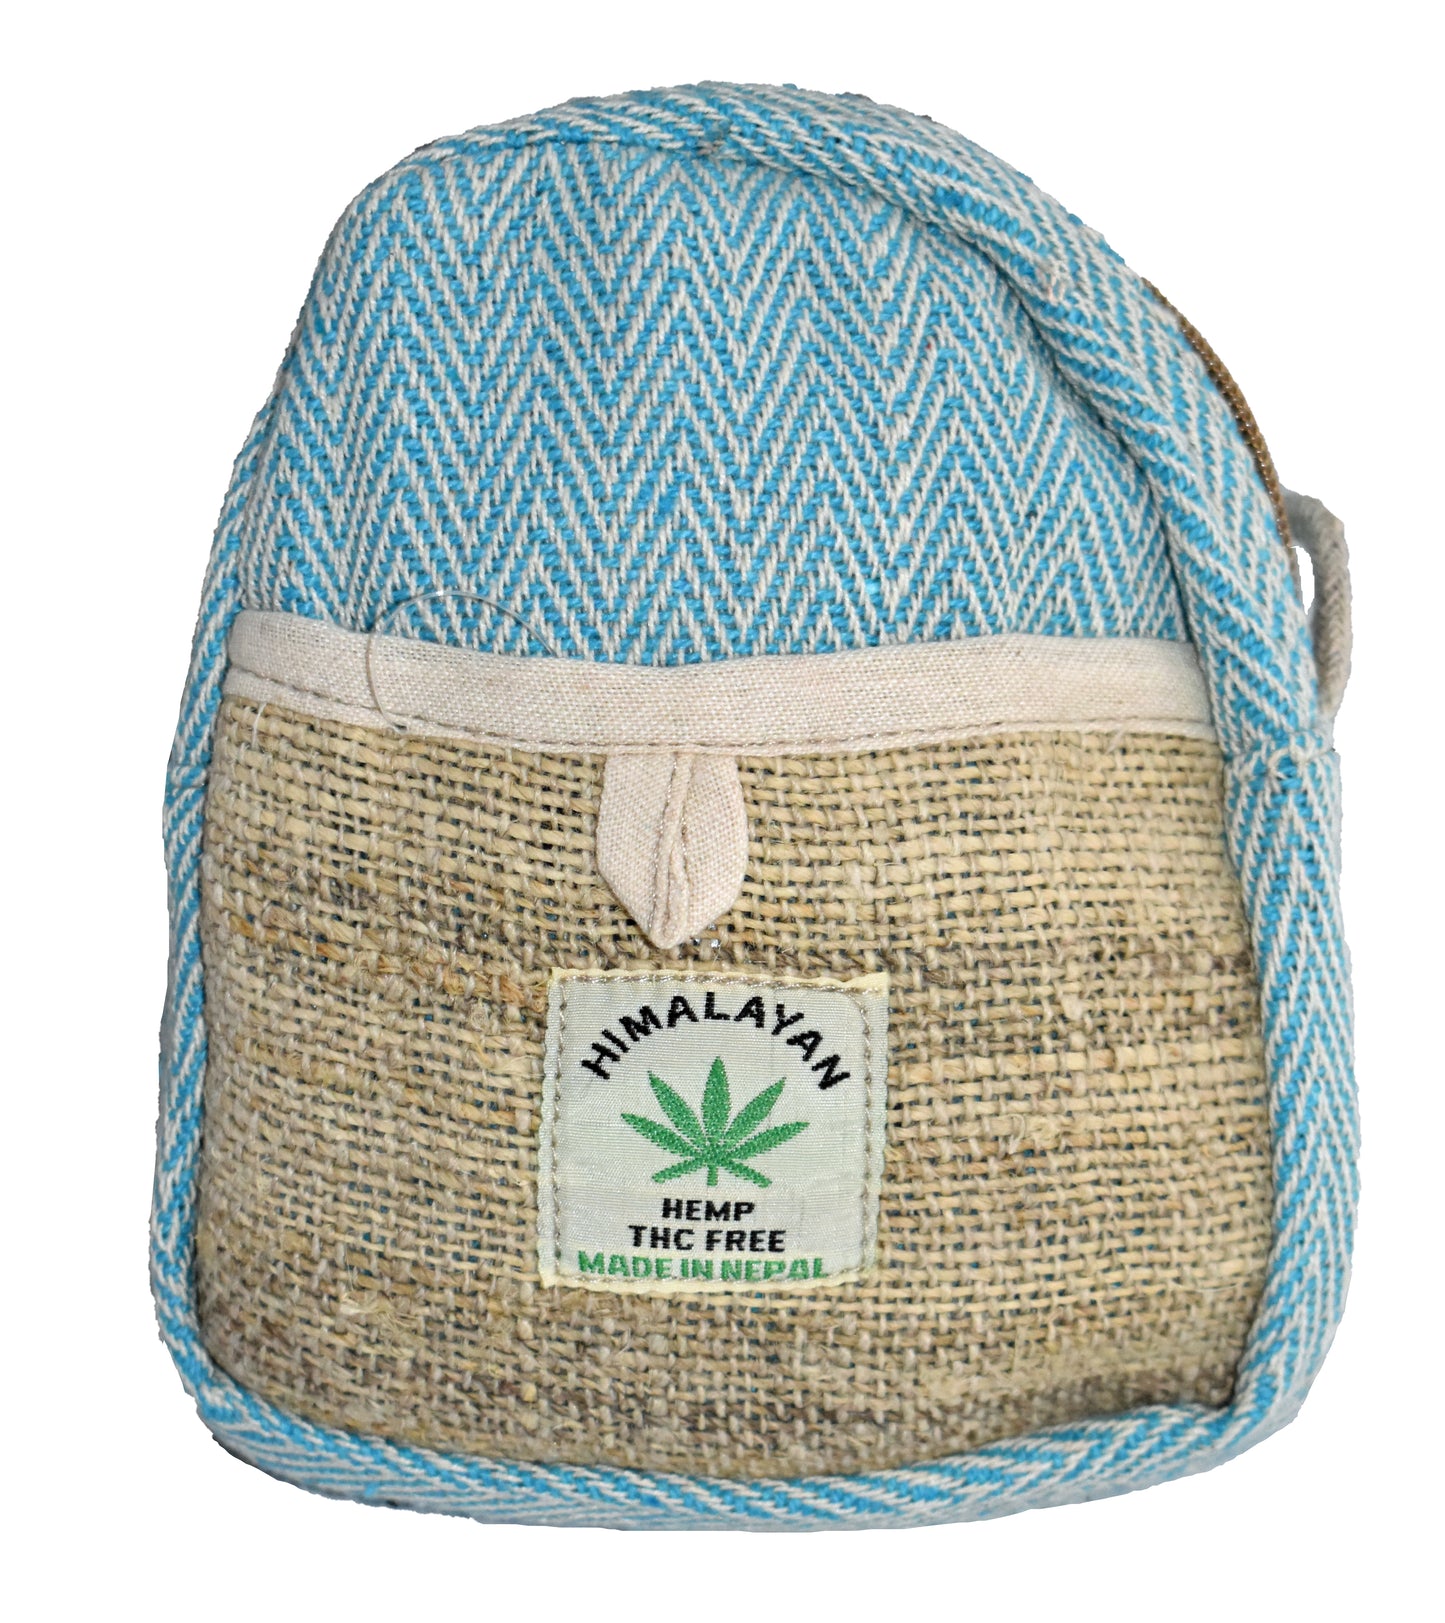 Cotton & Hemp Dori Shoulder Bag